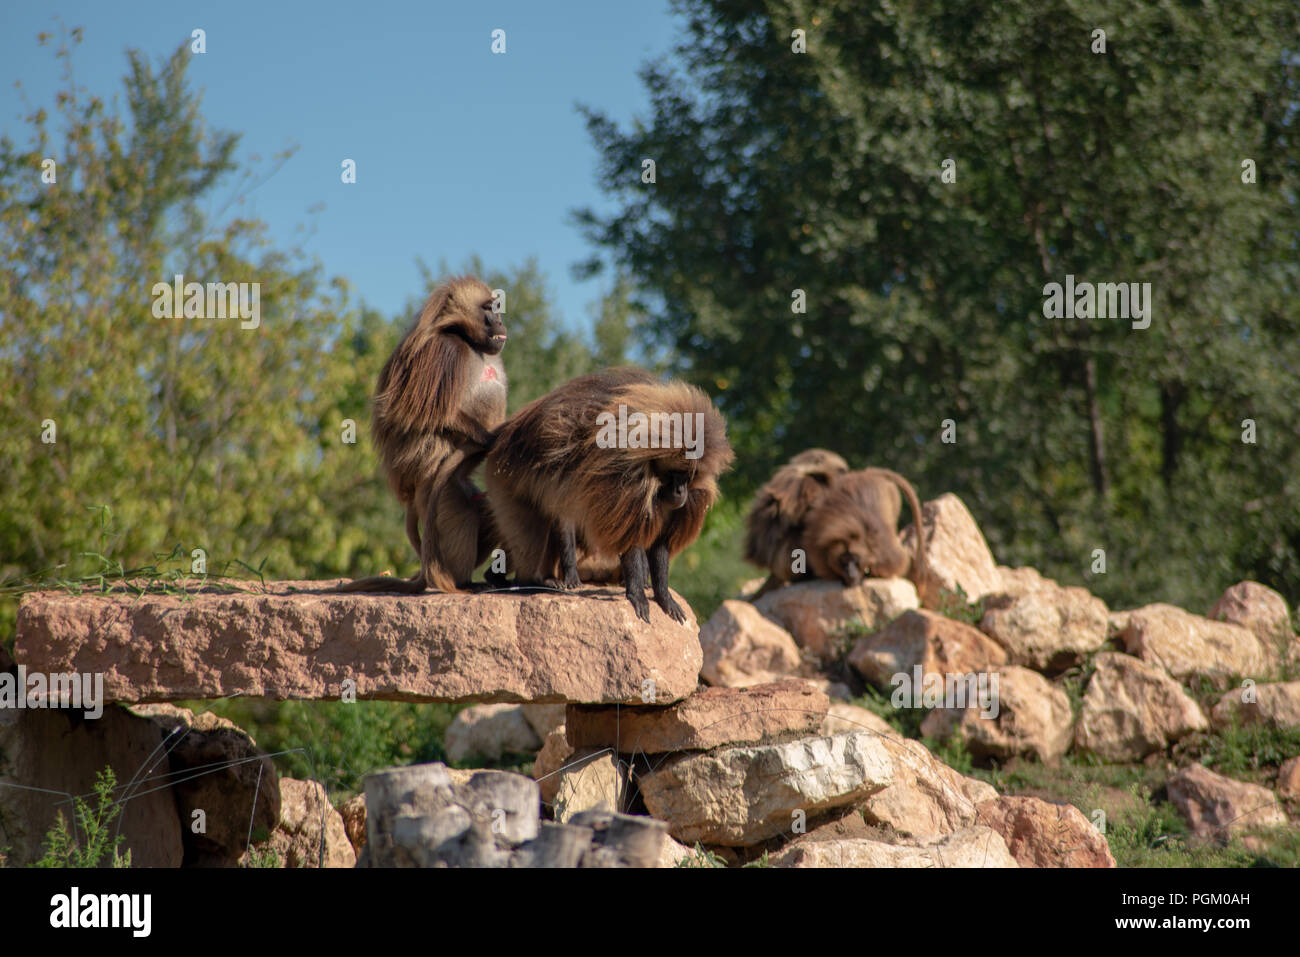 Il babbuino Gelada è una grossa scimmia della famiglia dei Cercopitecidi, endemica dell'Etiopia. È l'unica specie vivente del genere Theropithecus. Ge Stock Photo